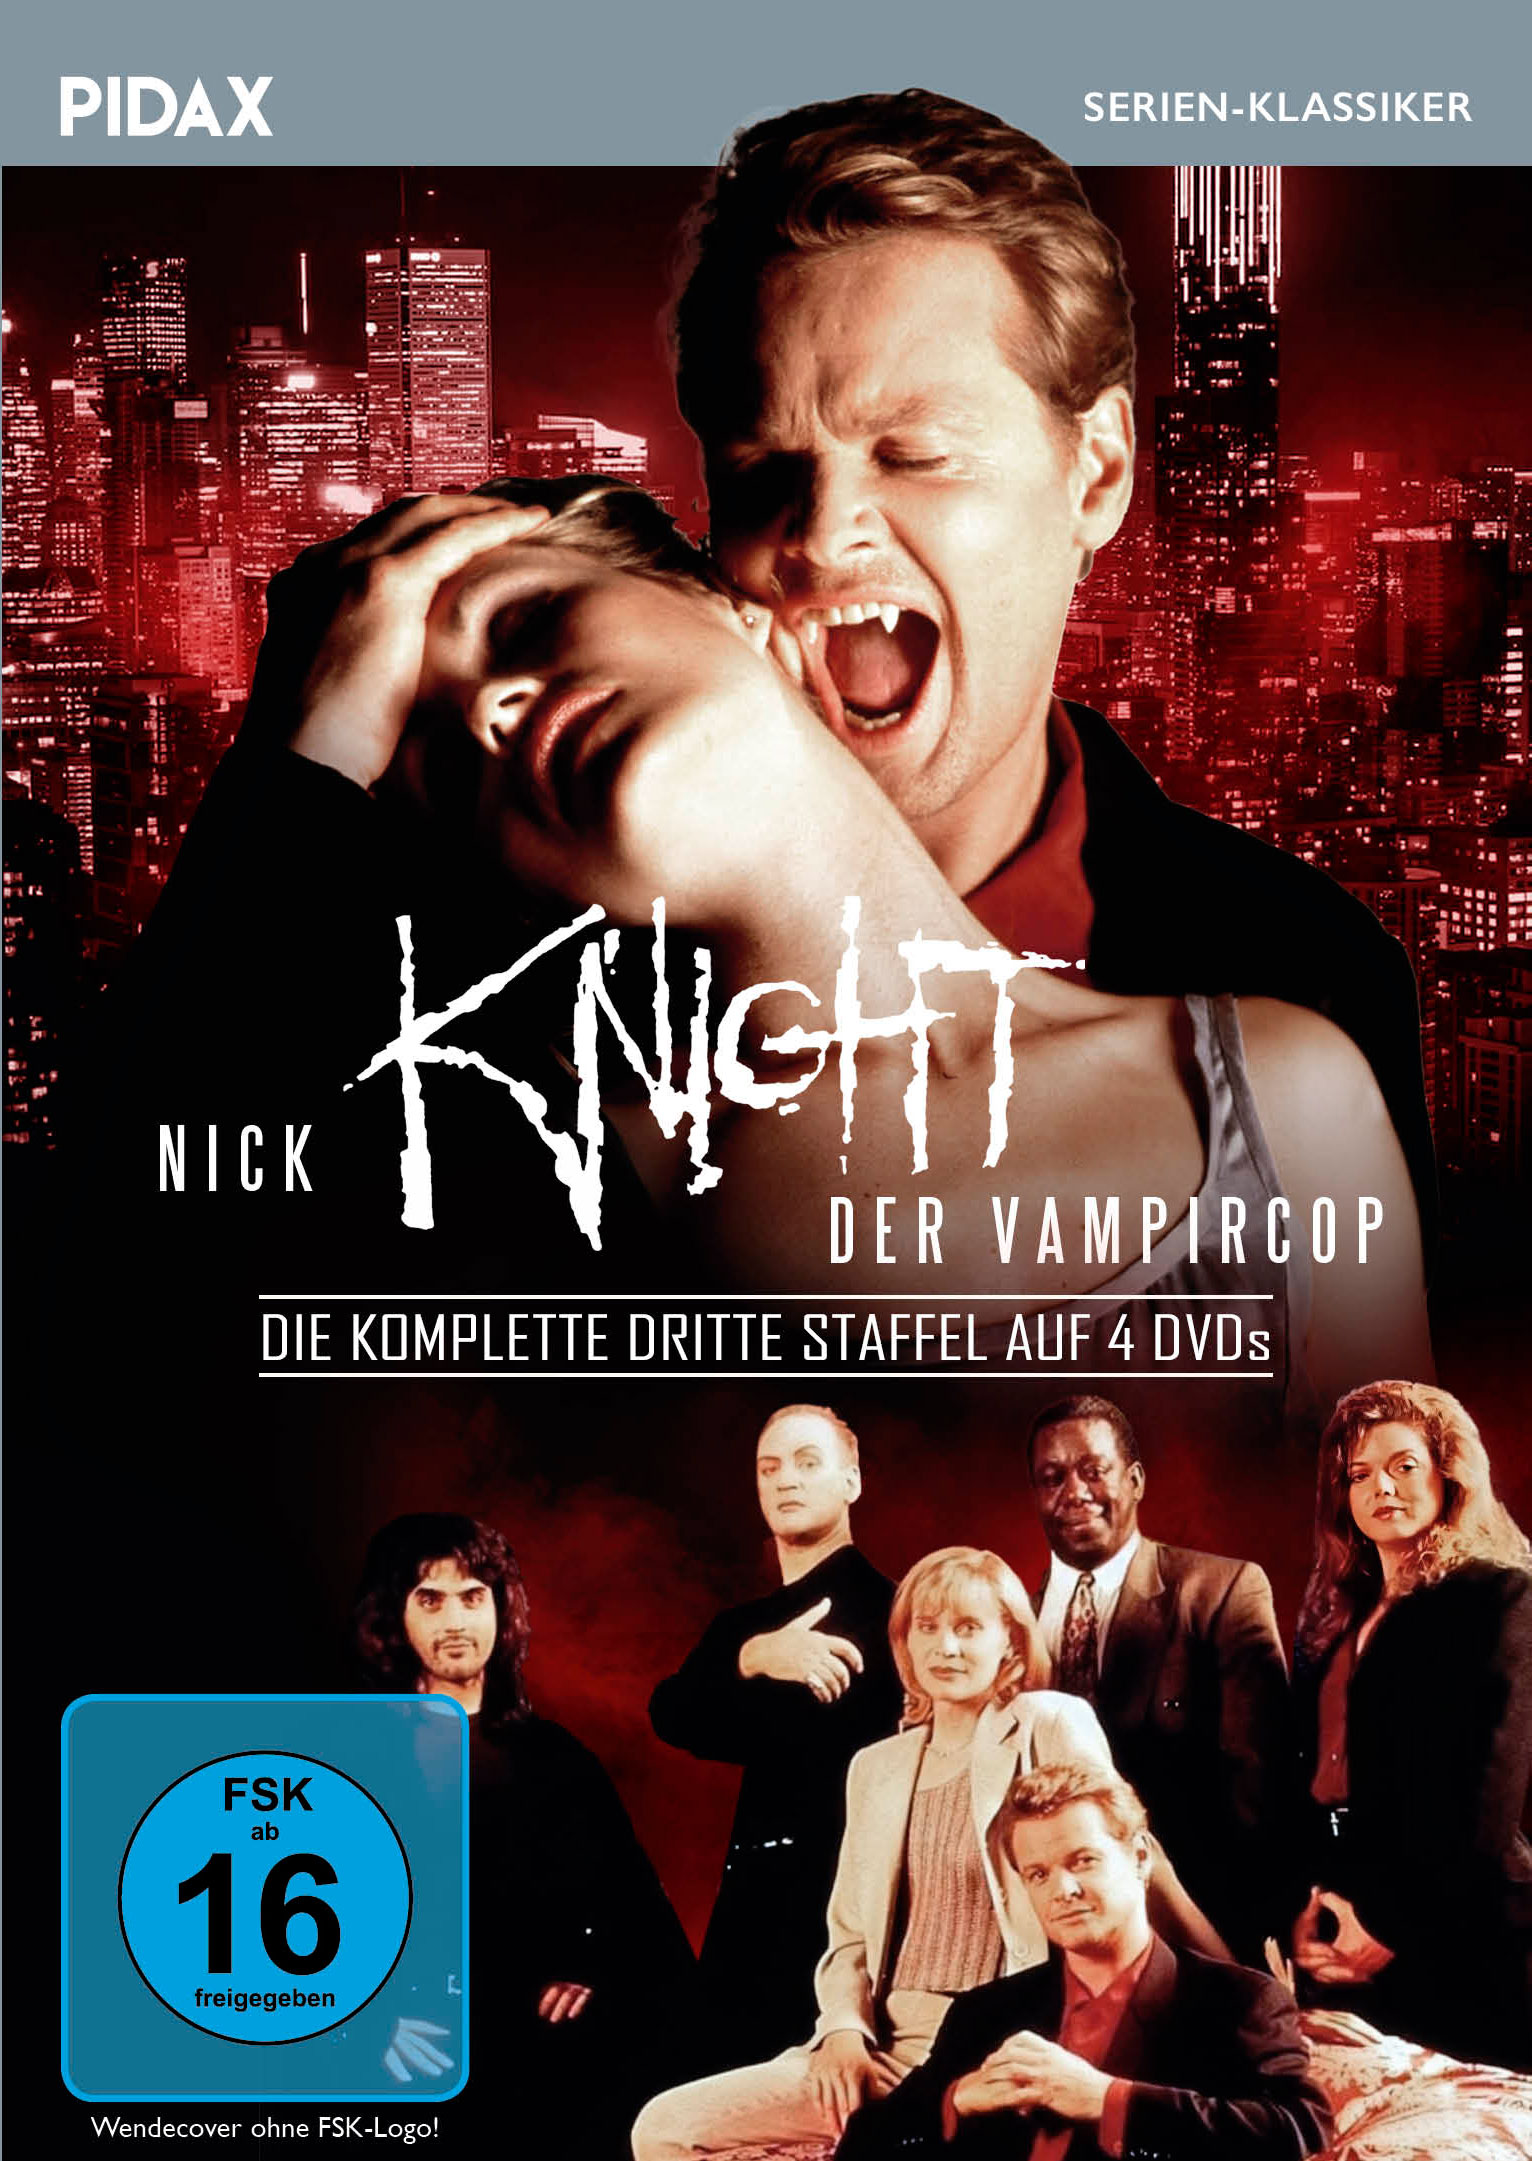 Nick Knight, der Vampircop, Staffel 3